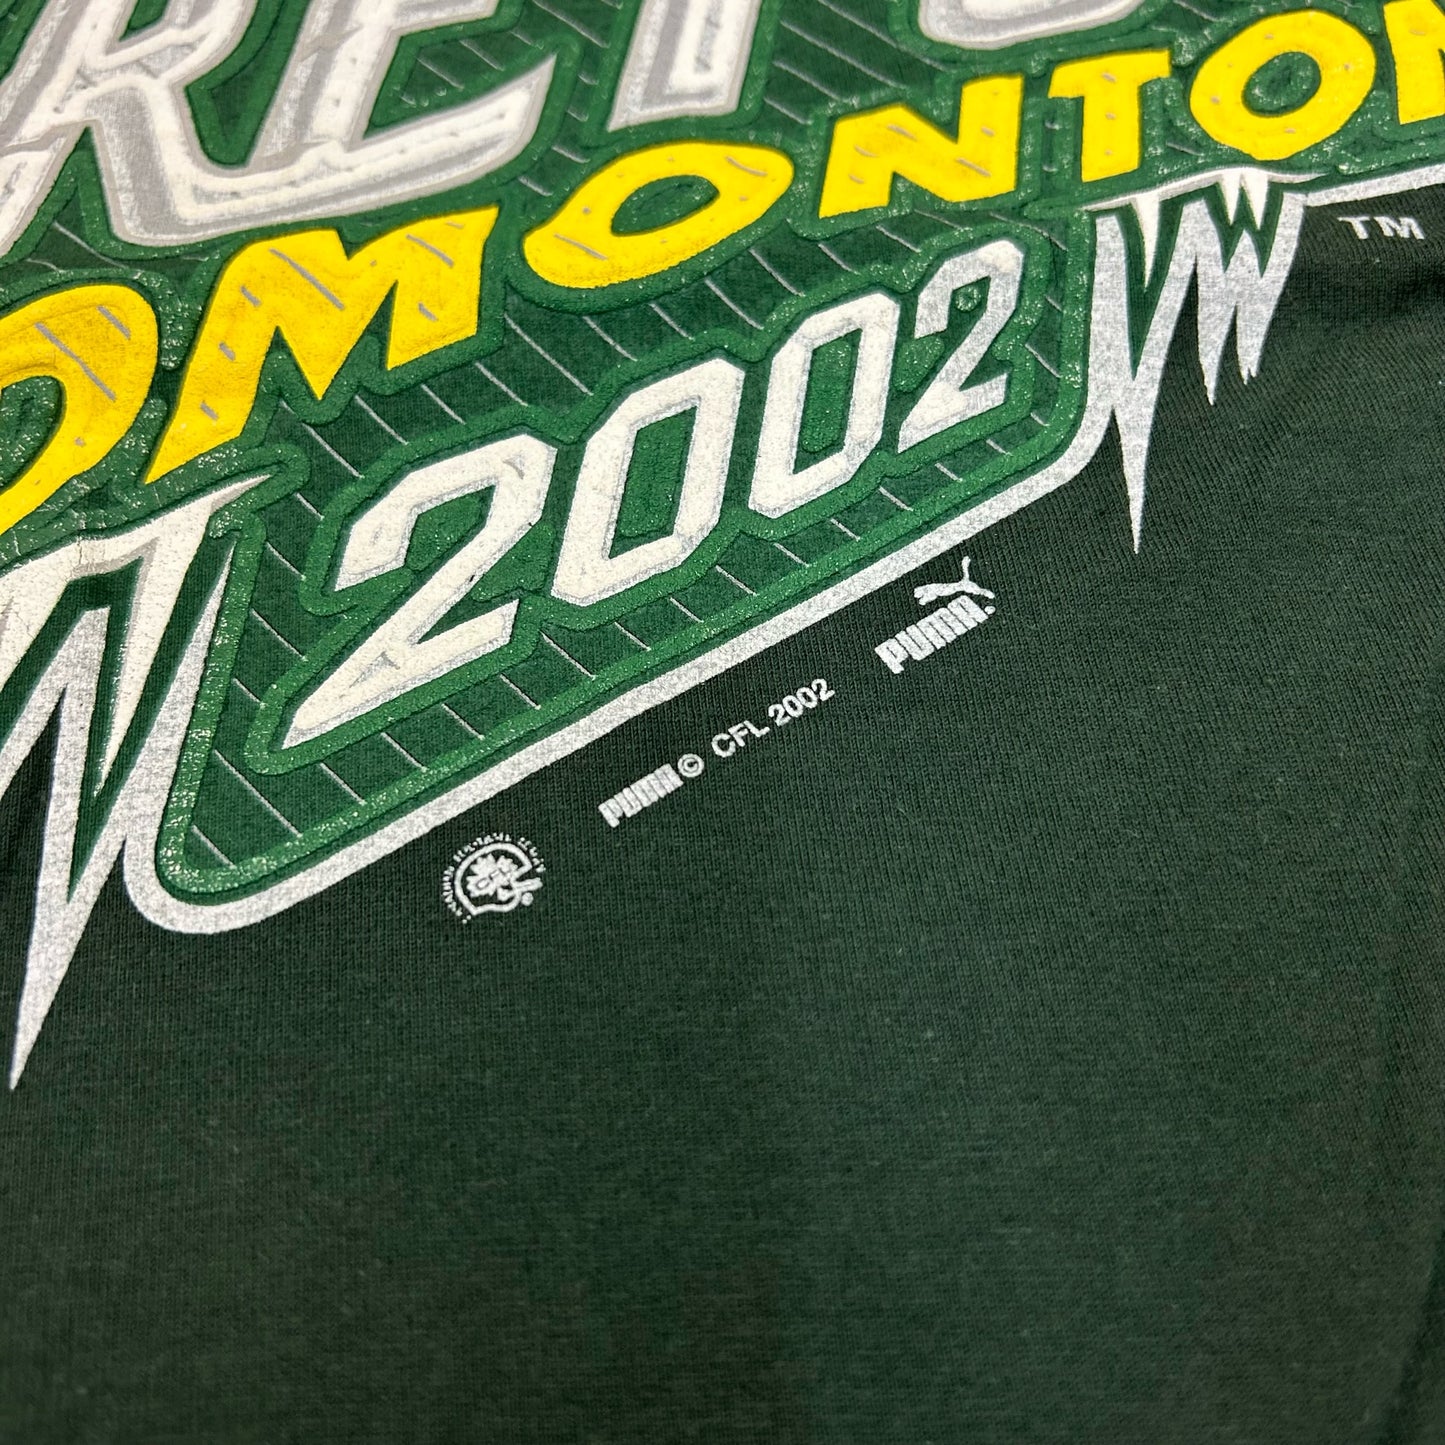 2002 Grey Cup Edmonton T-Shirt size L